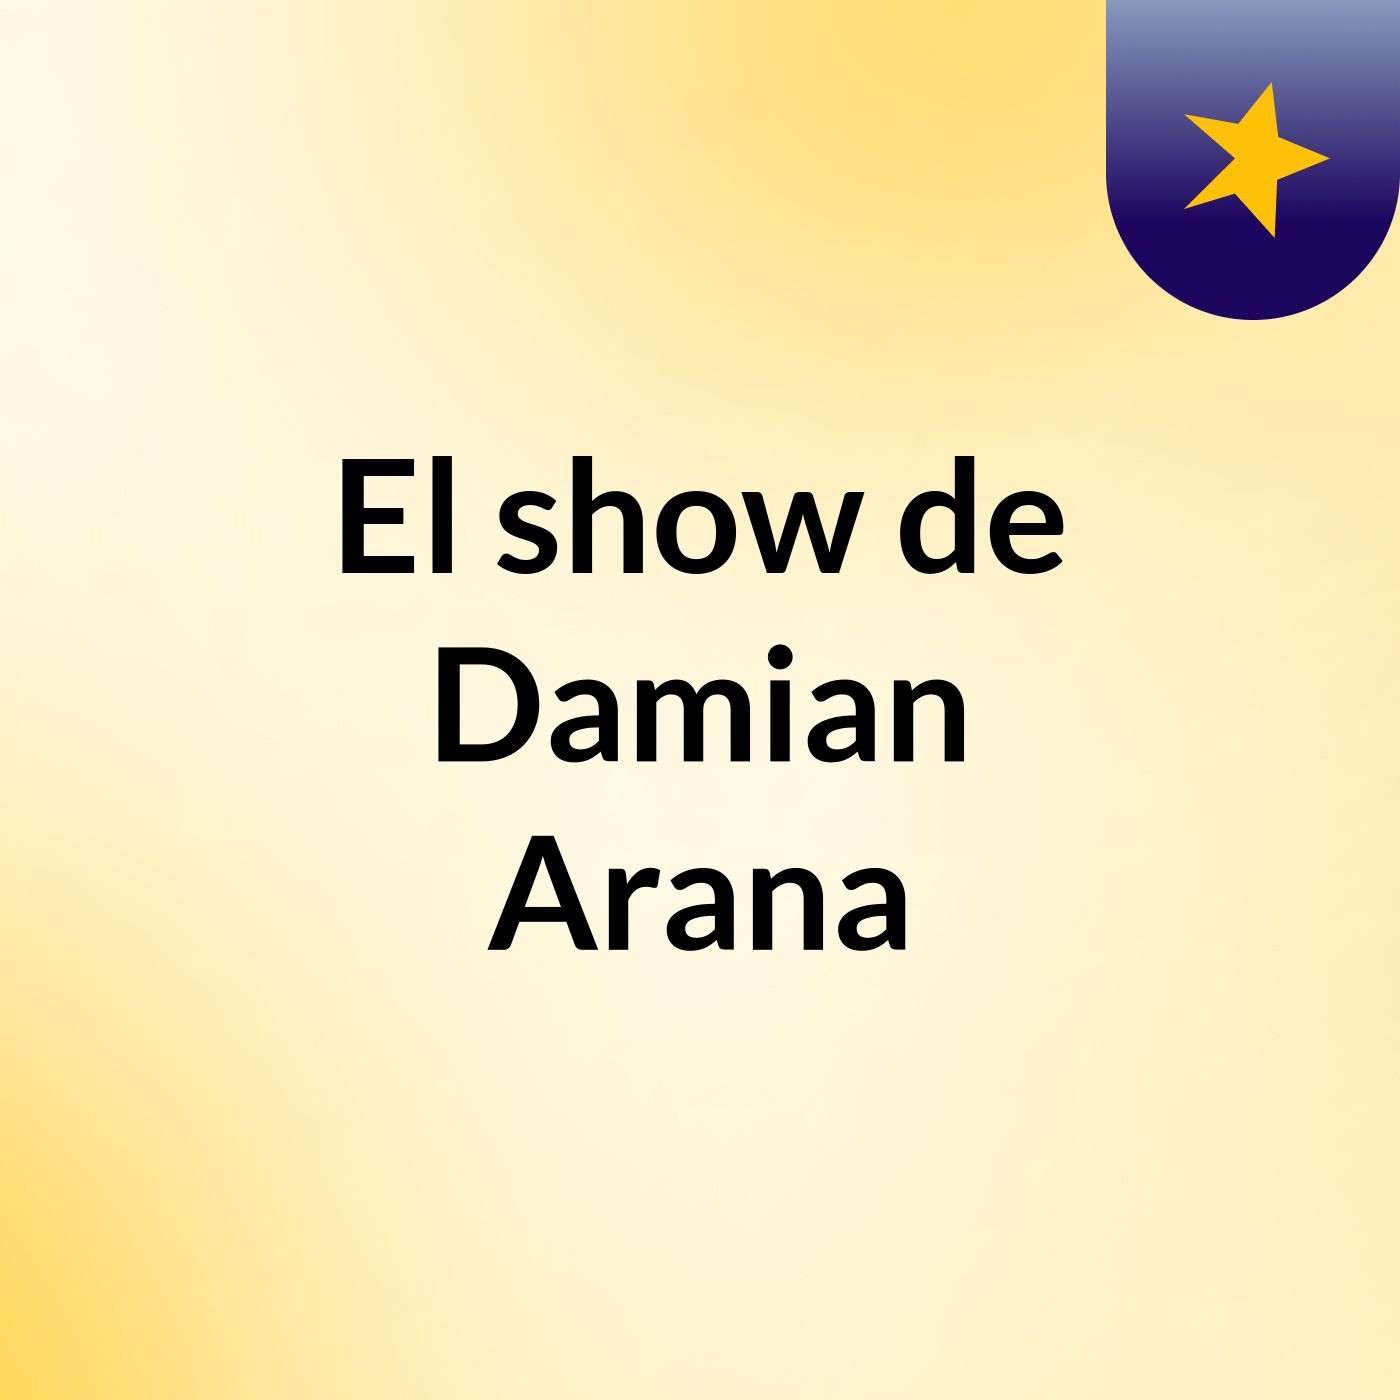 El show de Damian Arana